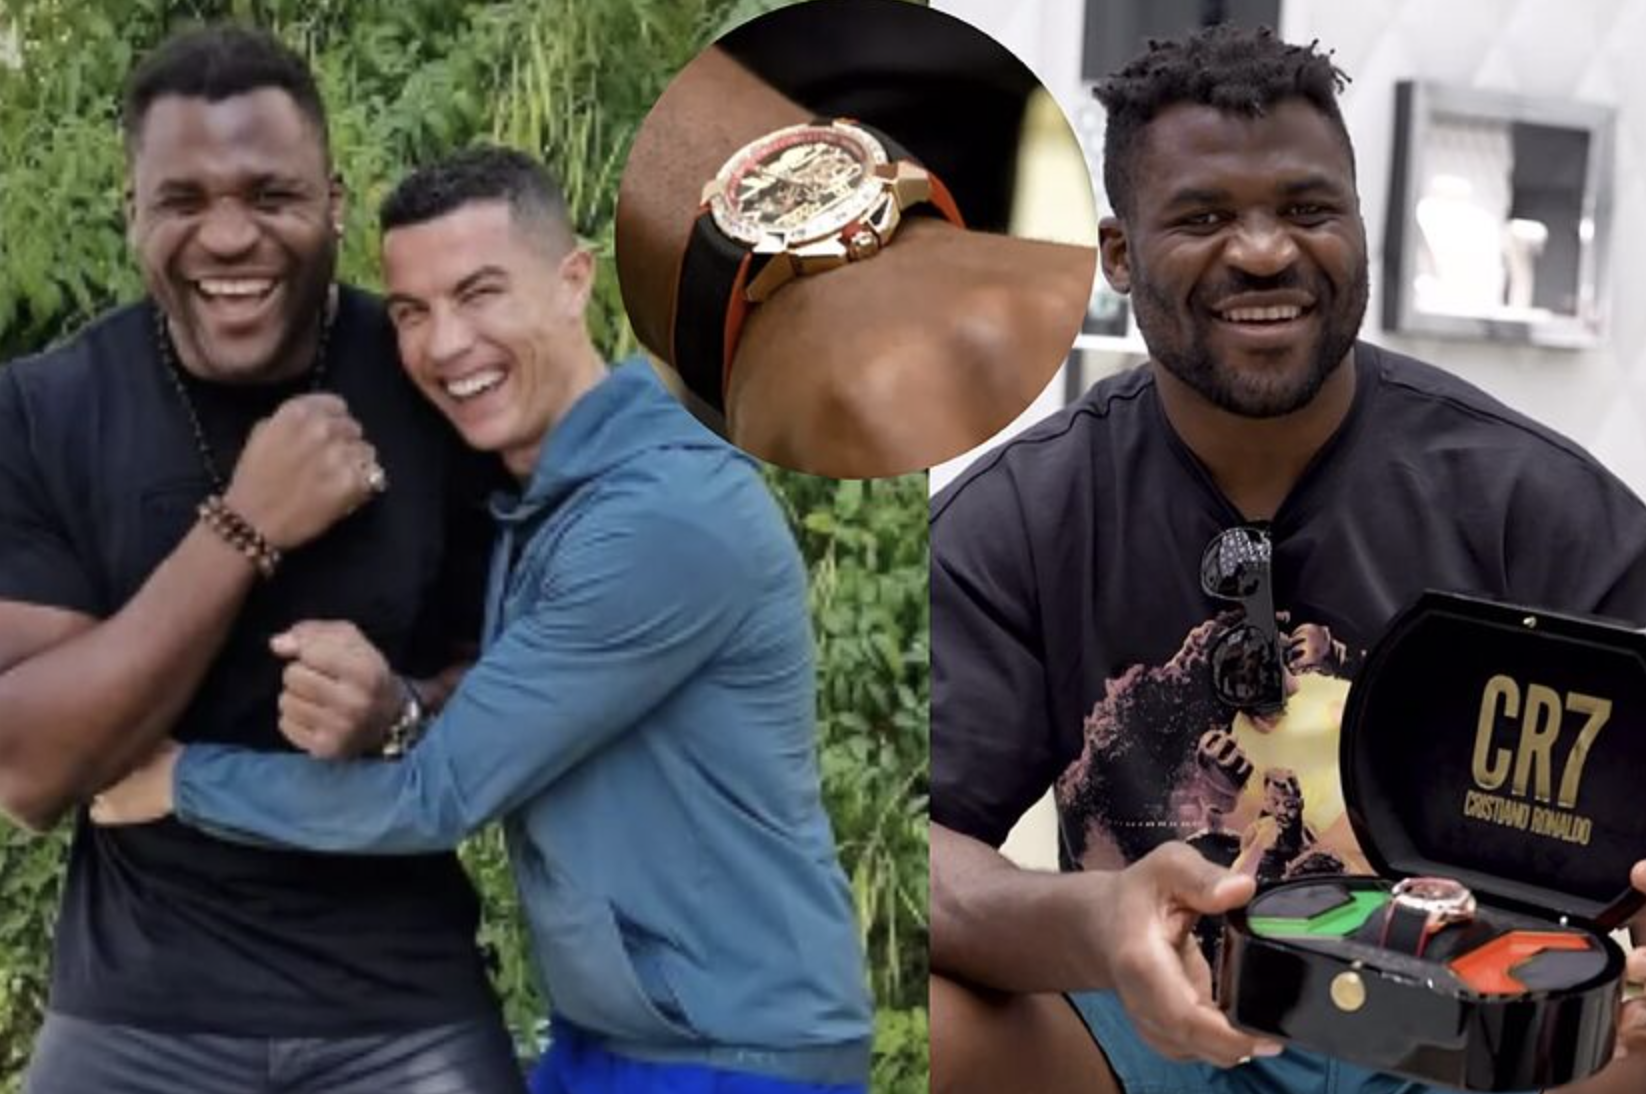 Cristiano Ronaldo tặng đồng hồ đắt giá 100.000 euro cho võ sĩ sắp đấu Tyson Fury  - Ảnh 1.